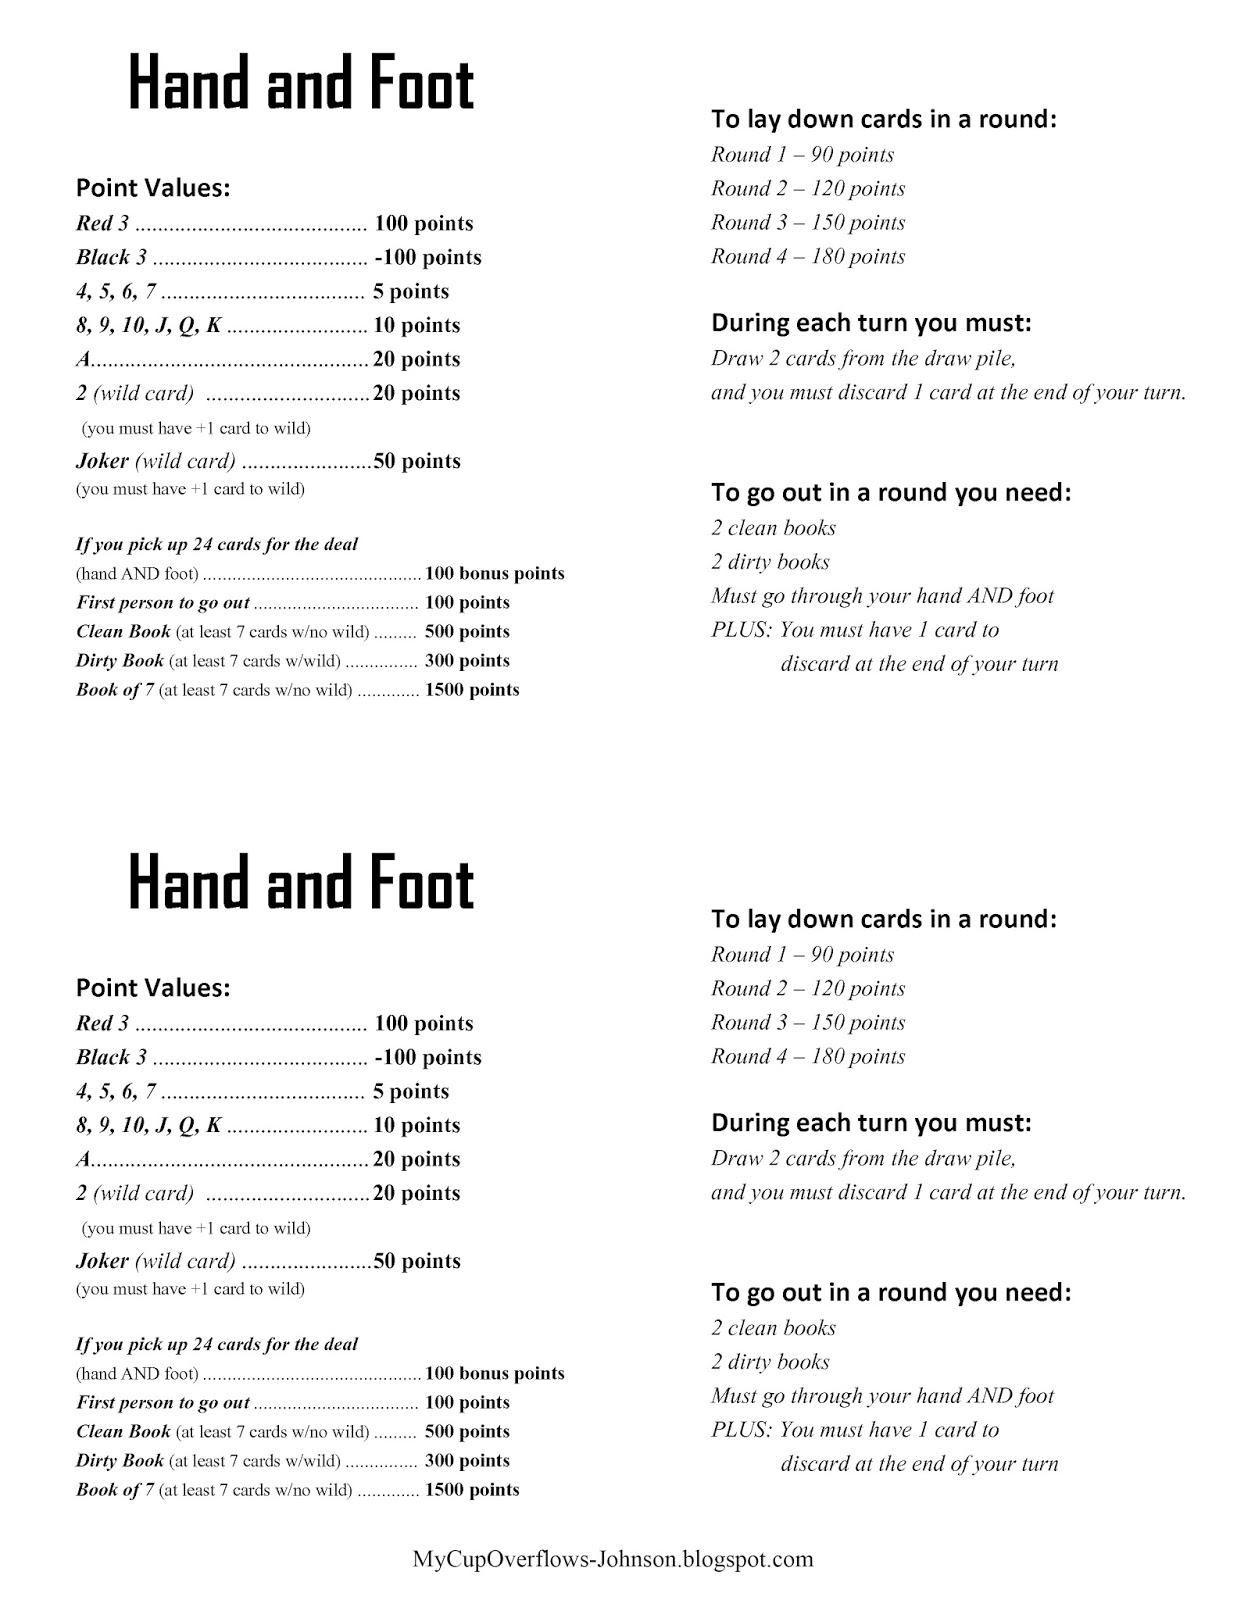 hand-and-foot-rules-printable-printable-blank-world